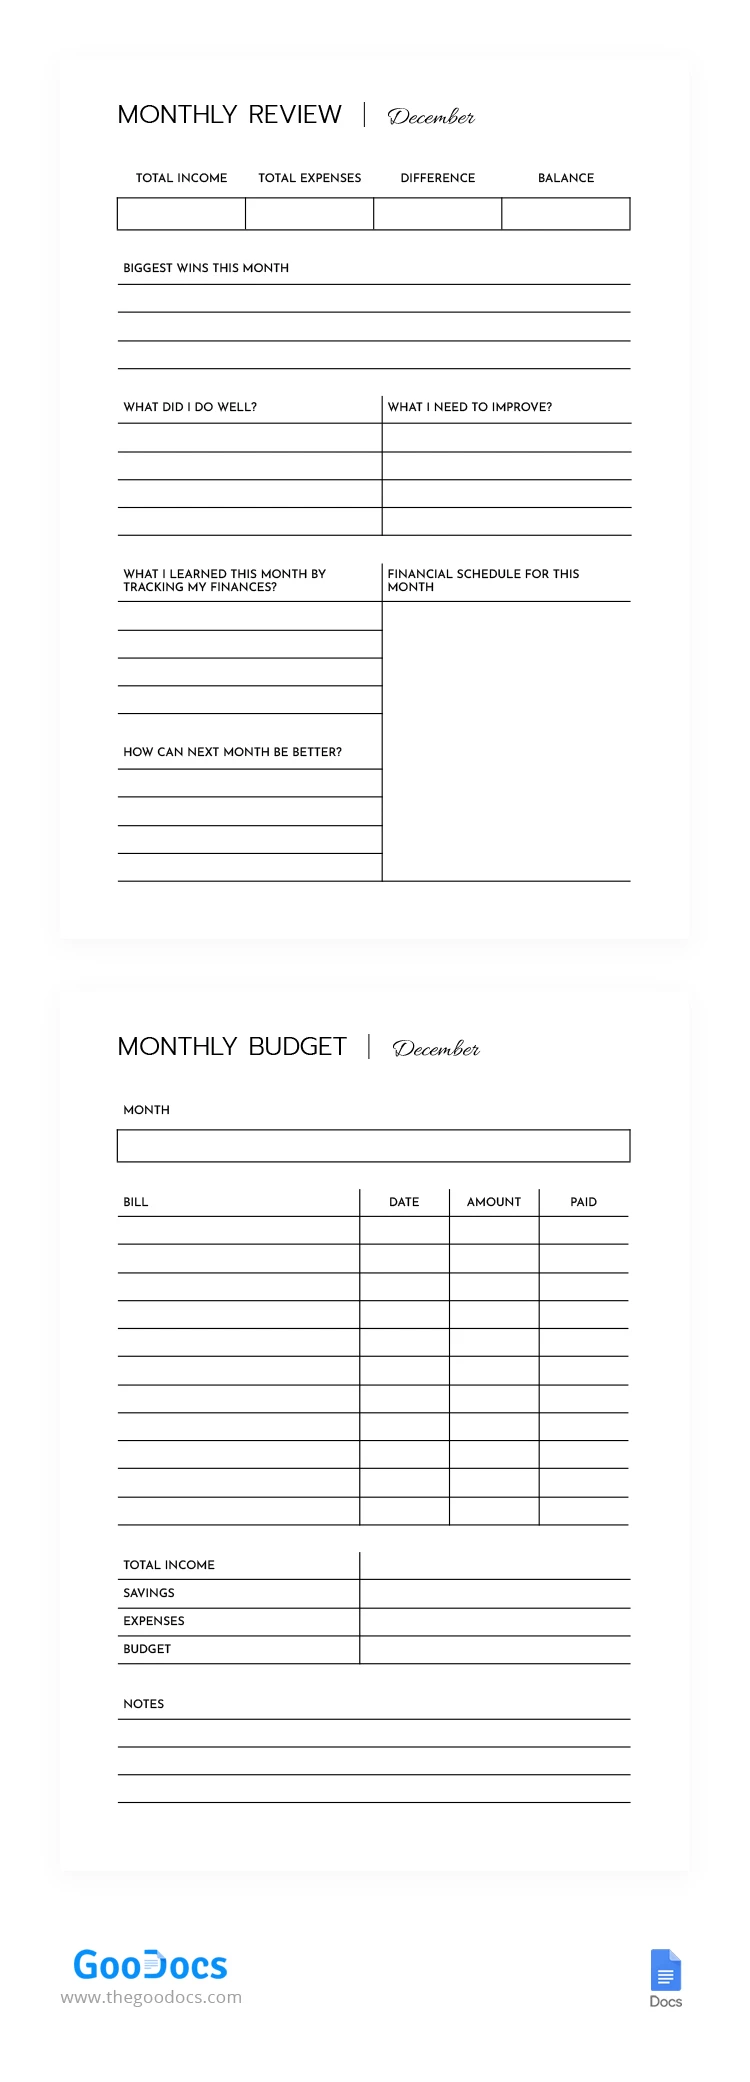 每月财政预算 - free Google Docs Template - 10068568